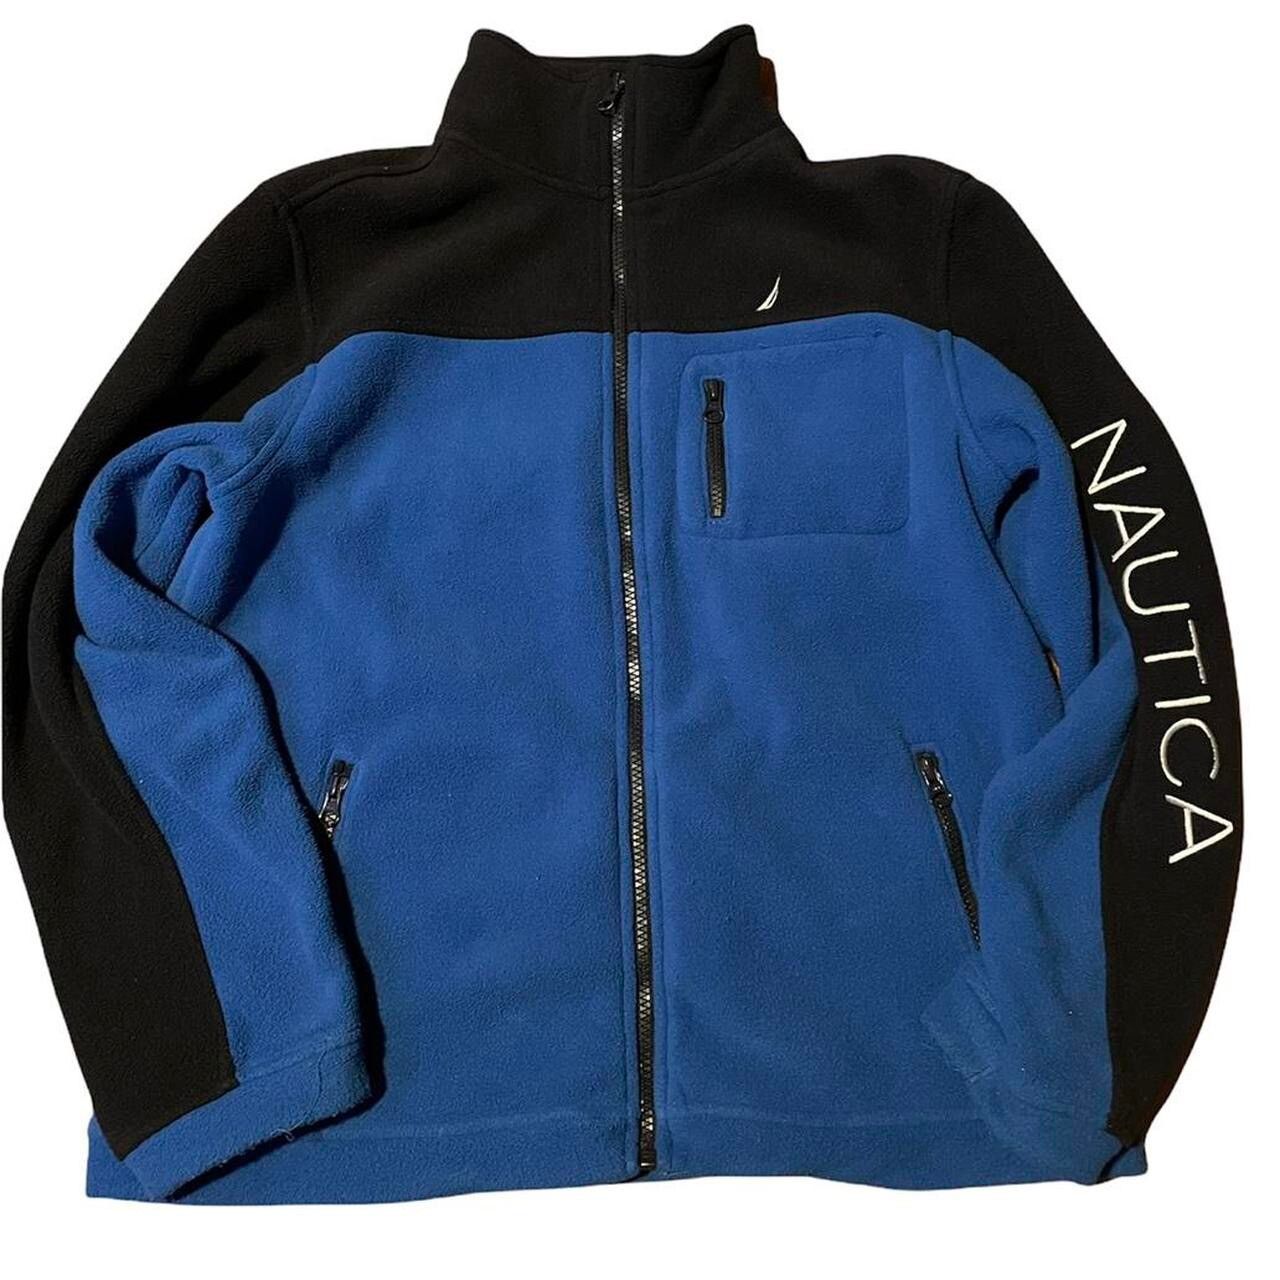 Nautica Nautica Fleece jacket | Grailed